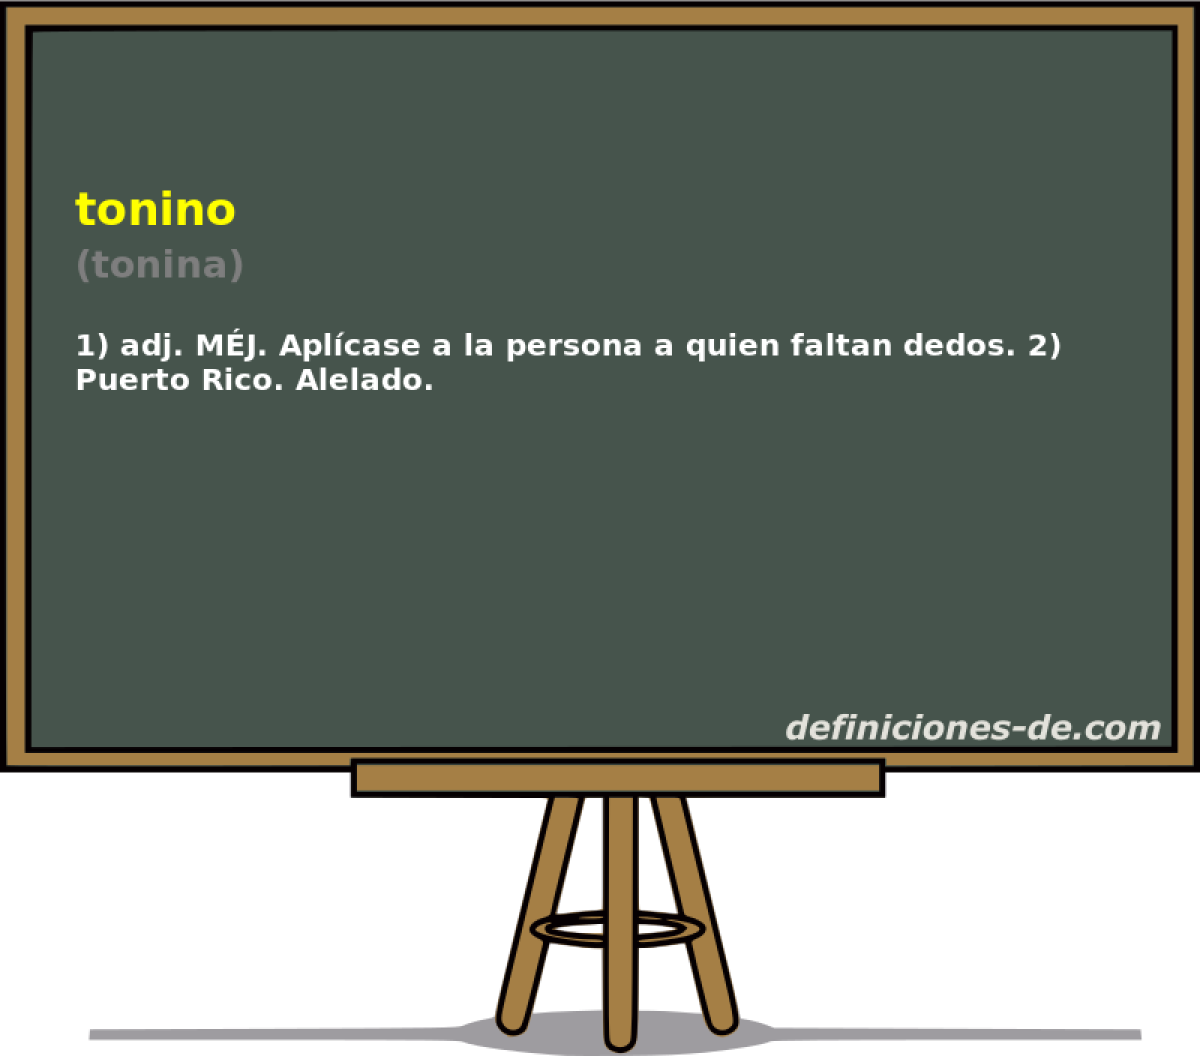 tonino (tonina)